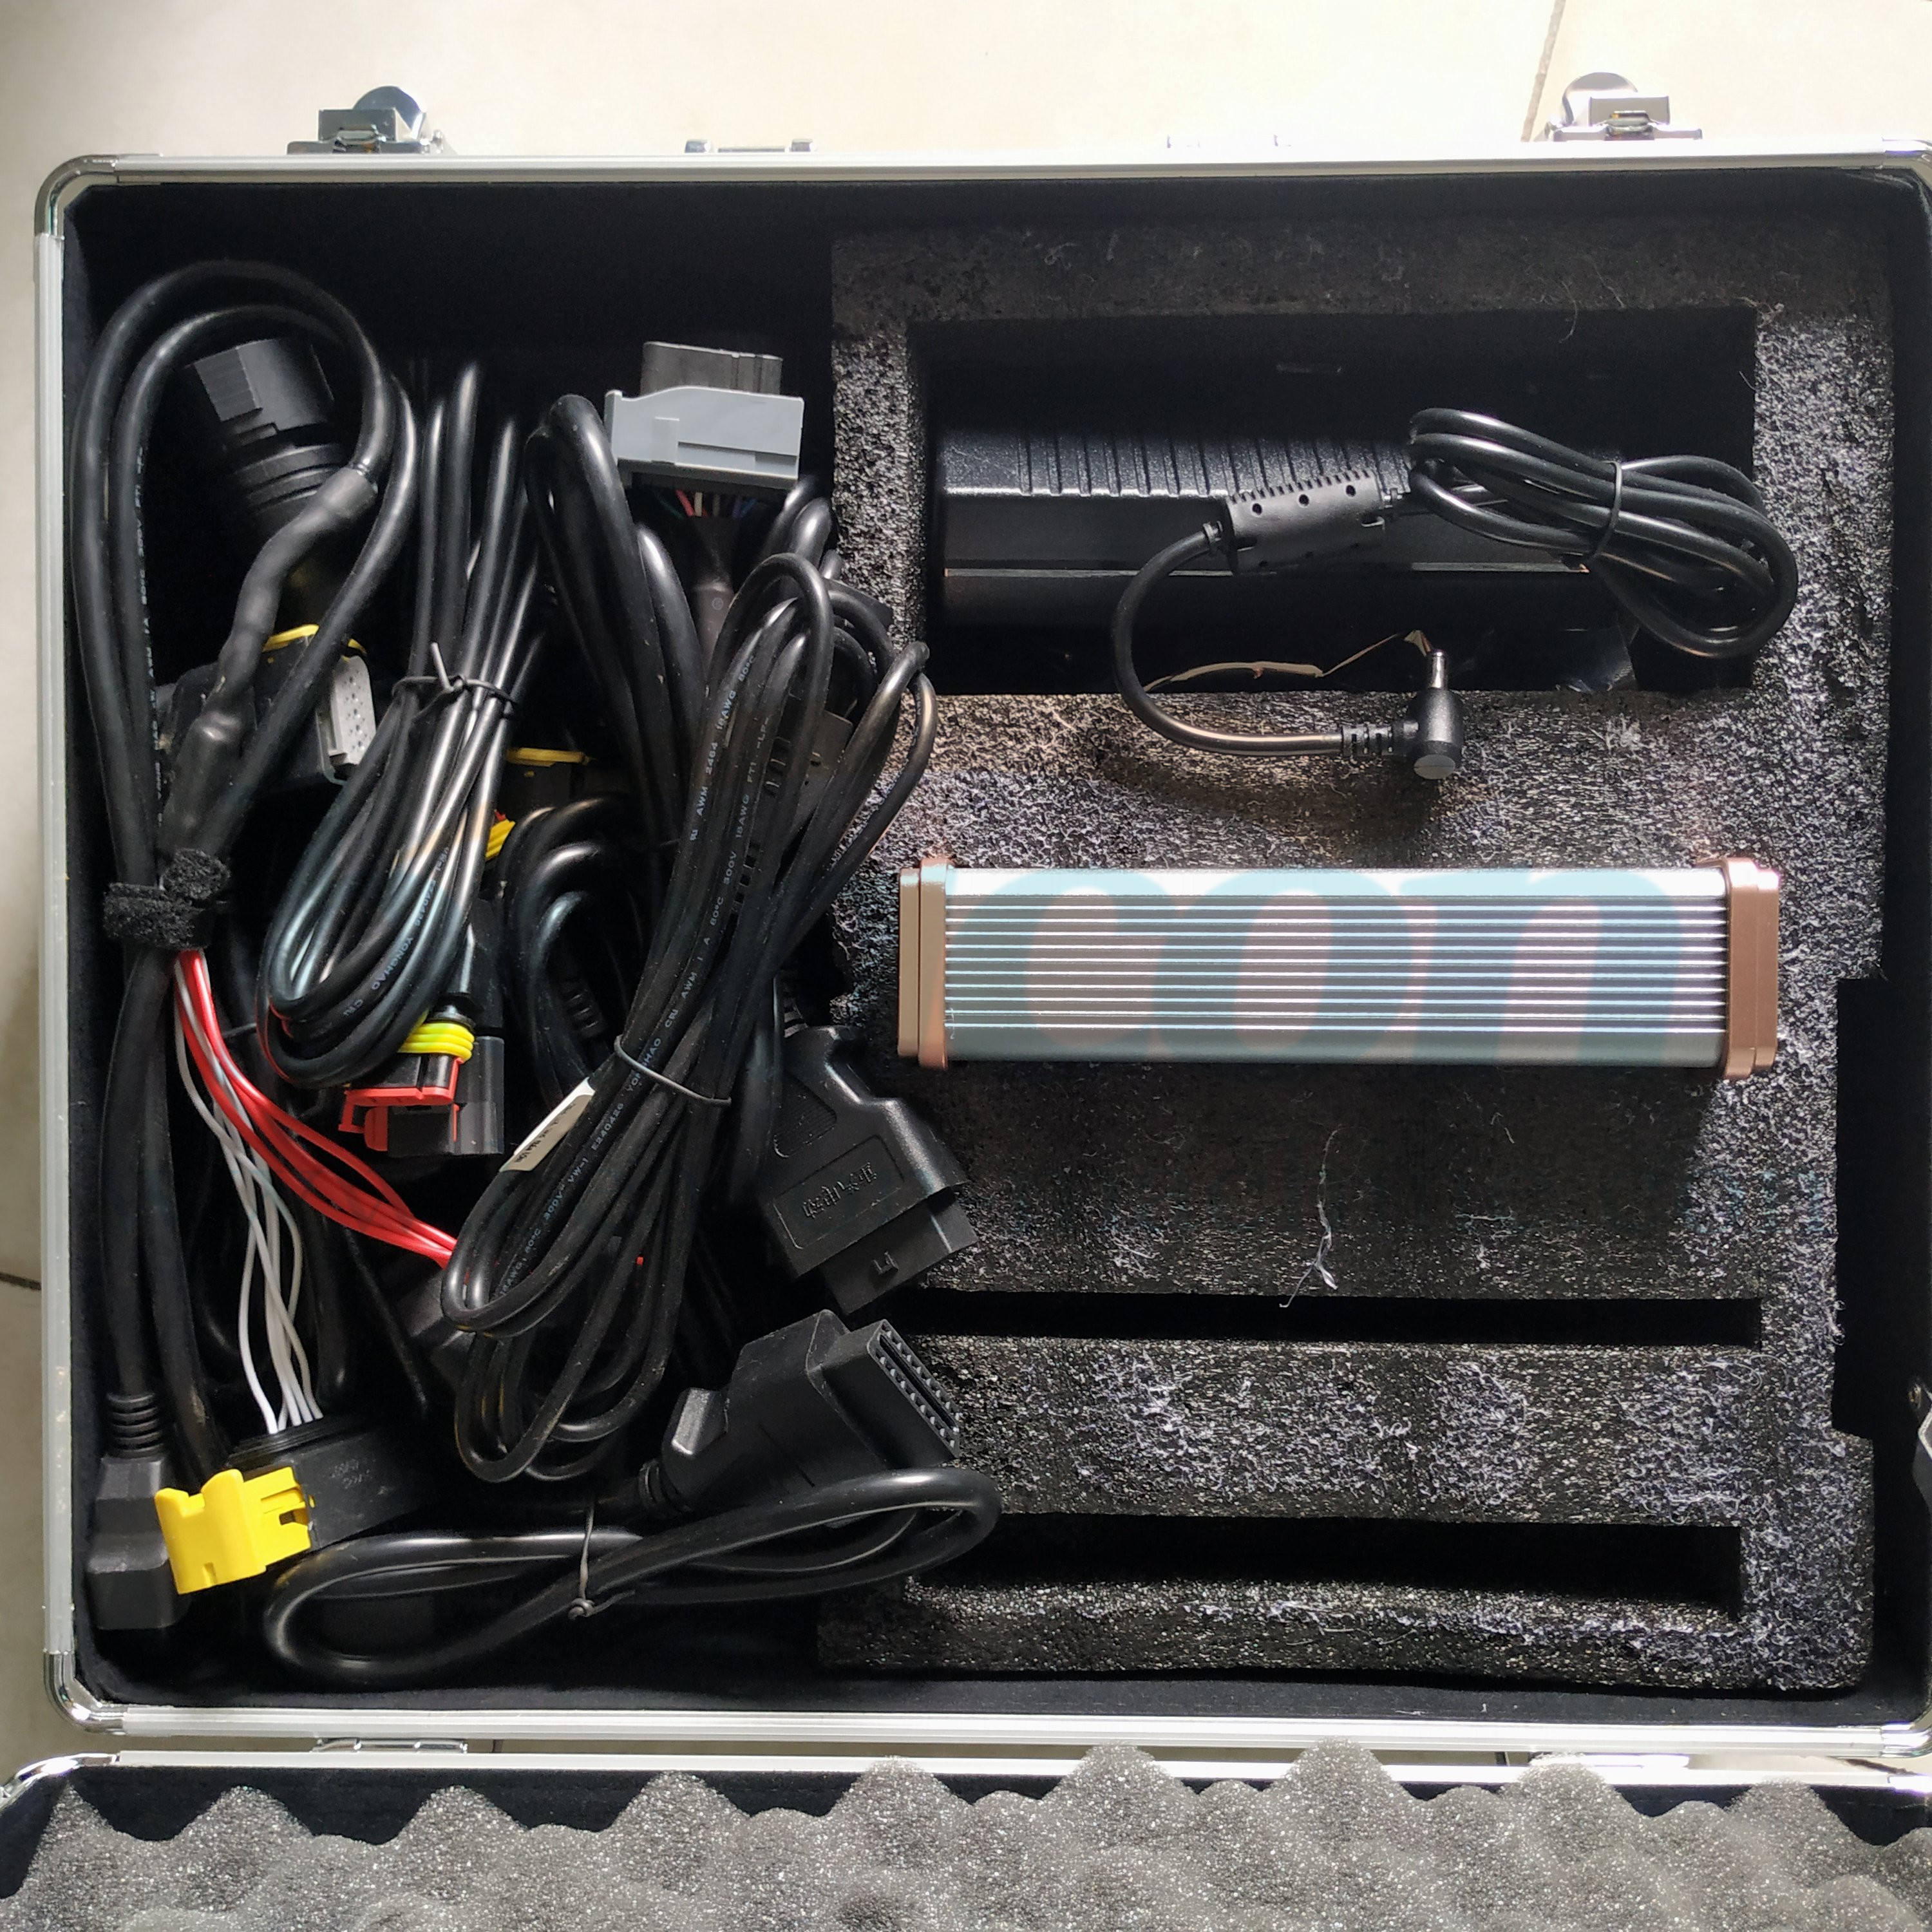 Urea SCR posprocesamiento common rail combustible diesel probador de bomba de urea Sensor de nitrógeno sensor de temperatura de nivel sensor de NOx pantalla táctil máquina integrada